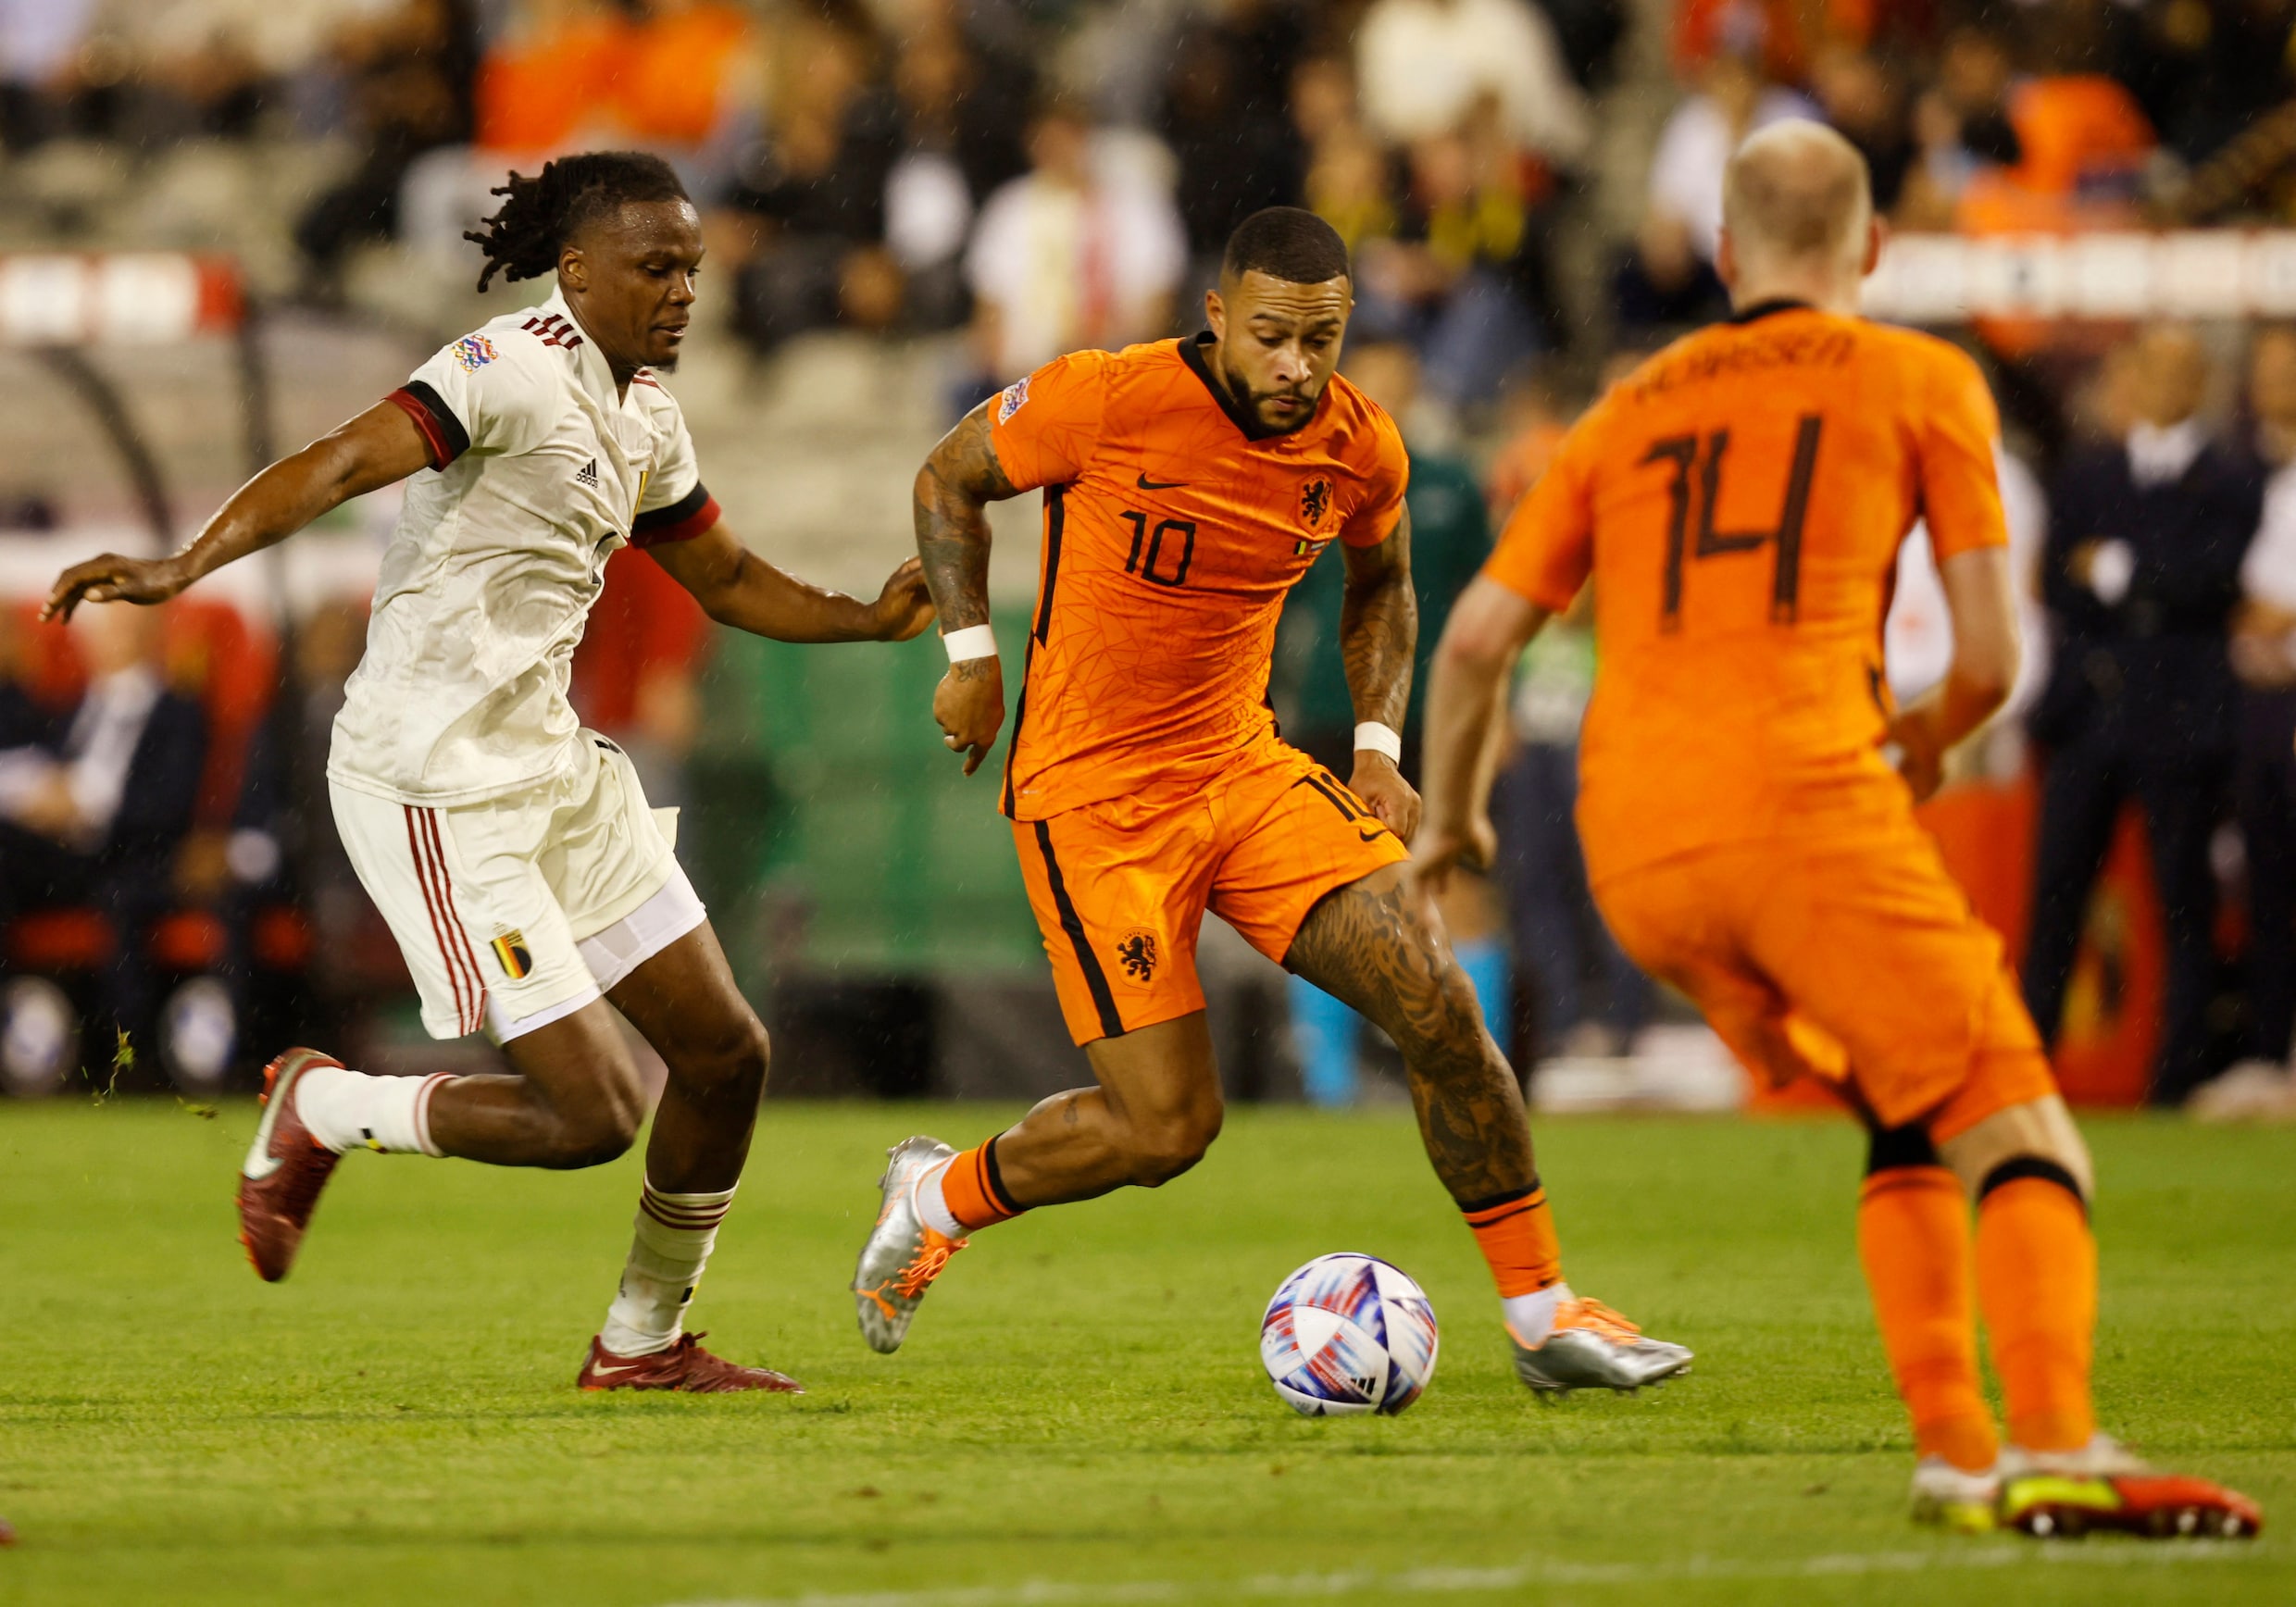 Nederland vernedert Rode Duivels met 1-4 zege: ‘Misschien hadden we wel zo’n nederlaag nodig’